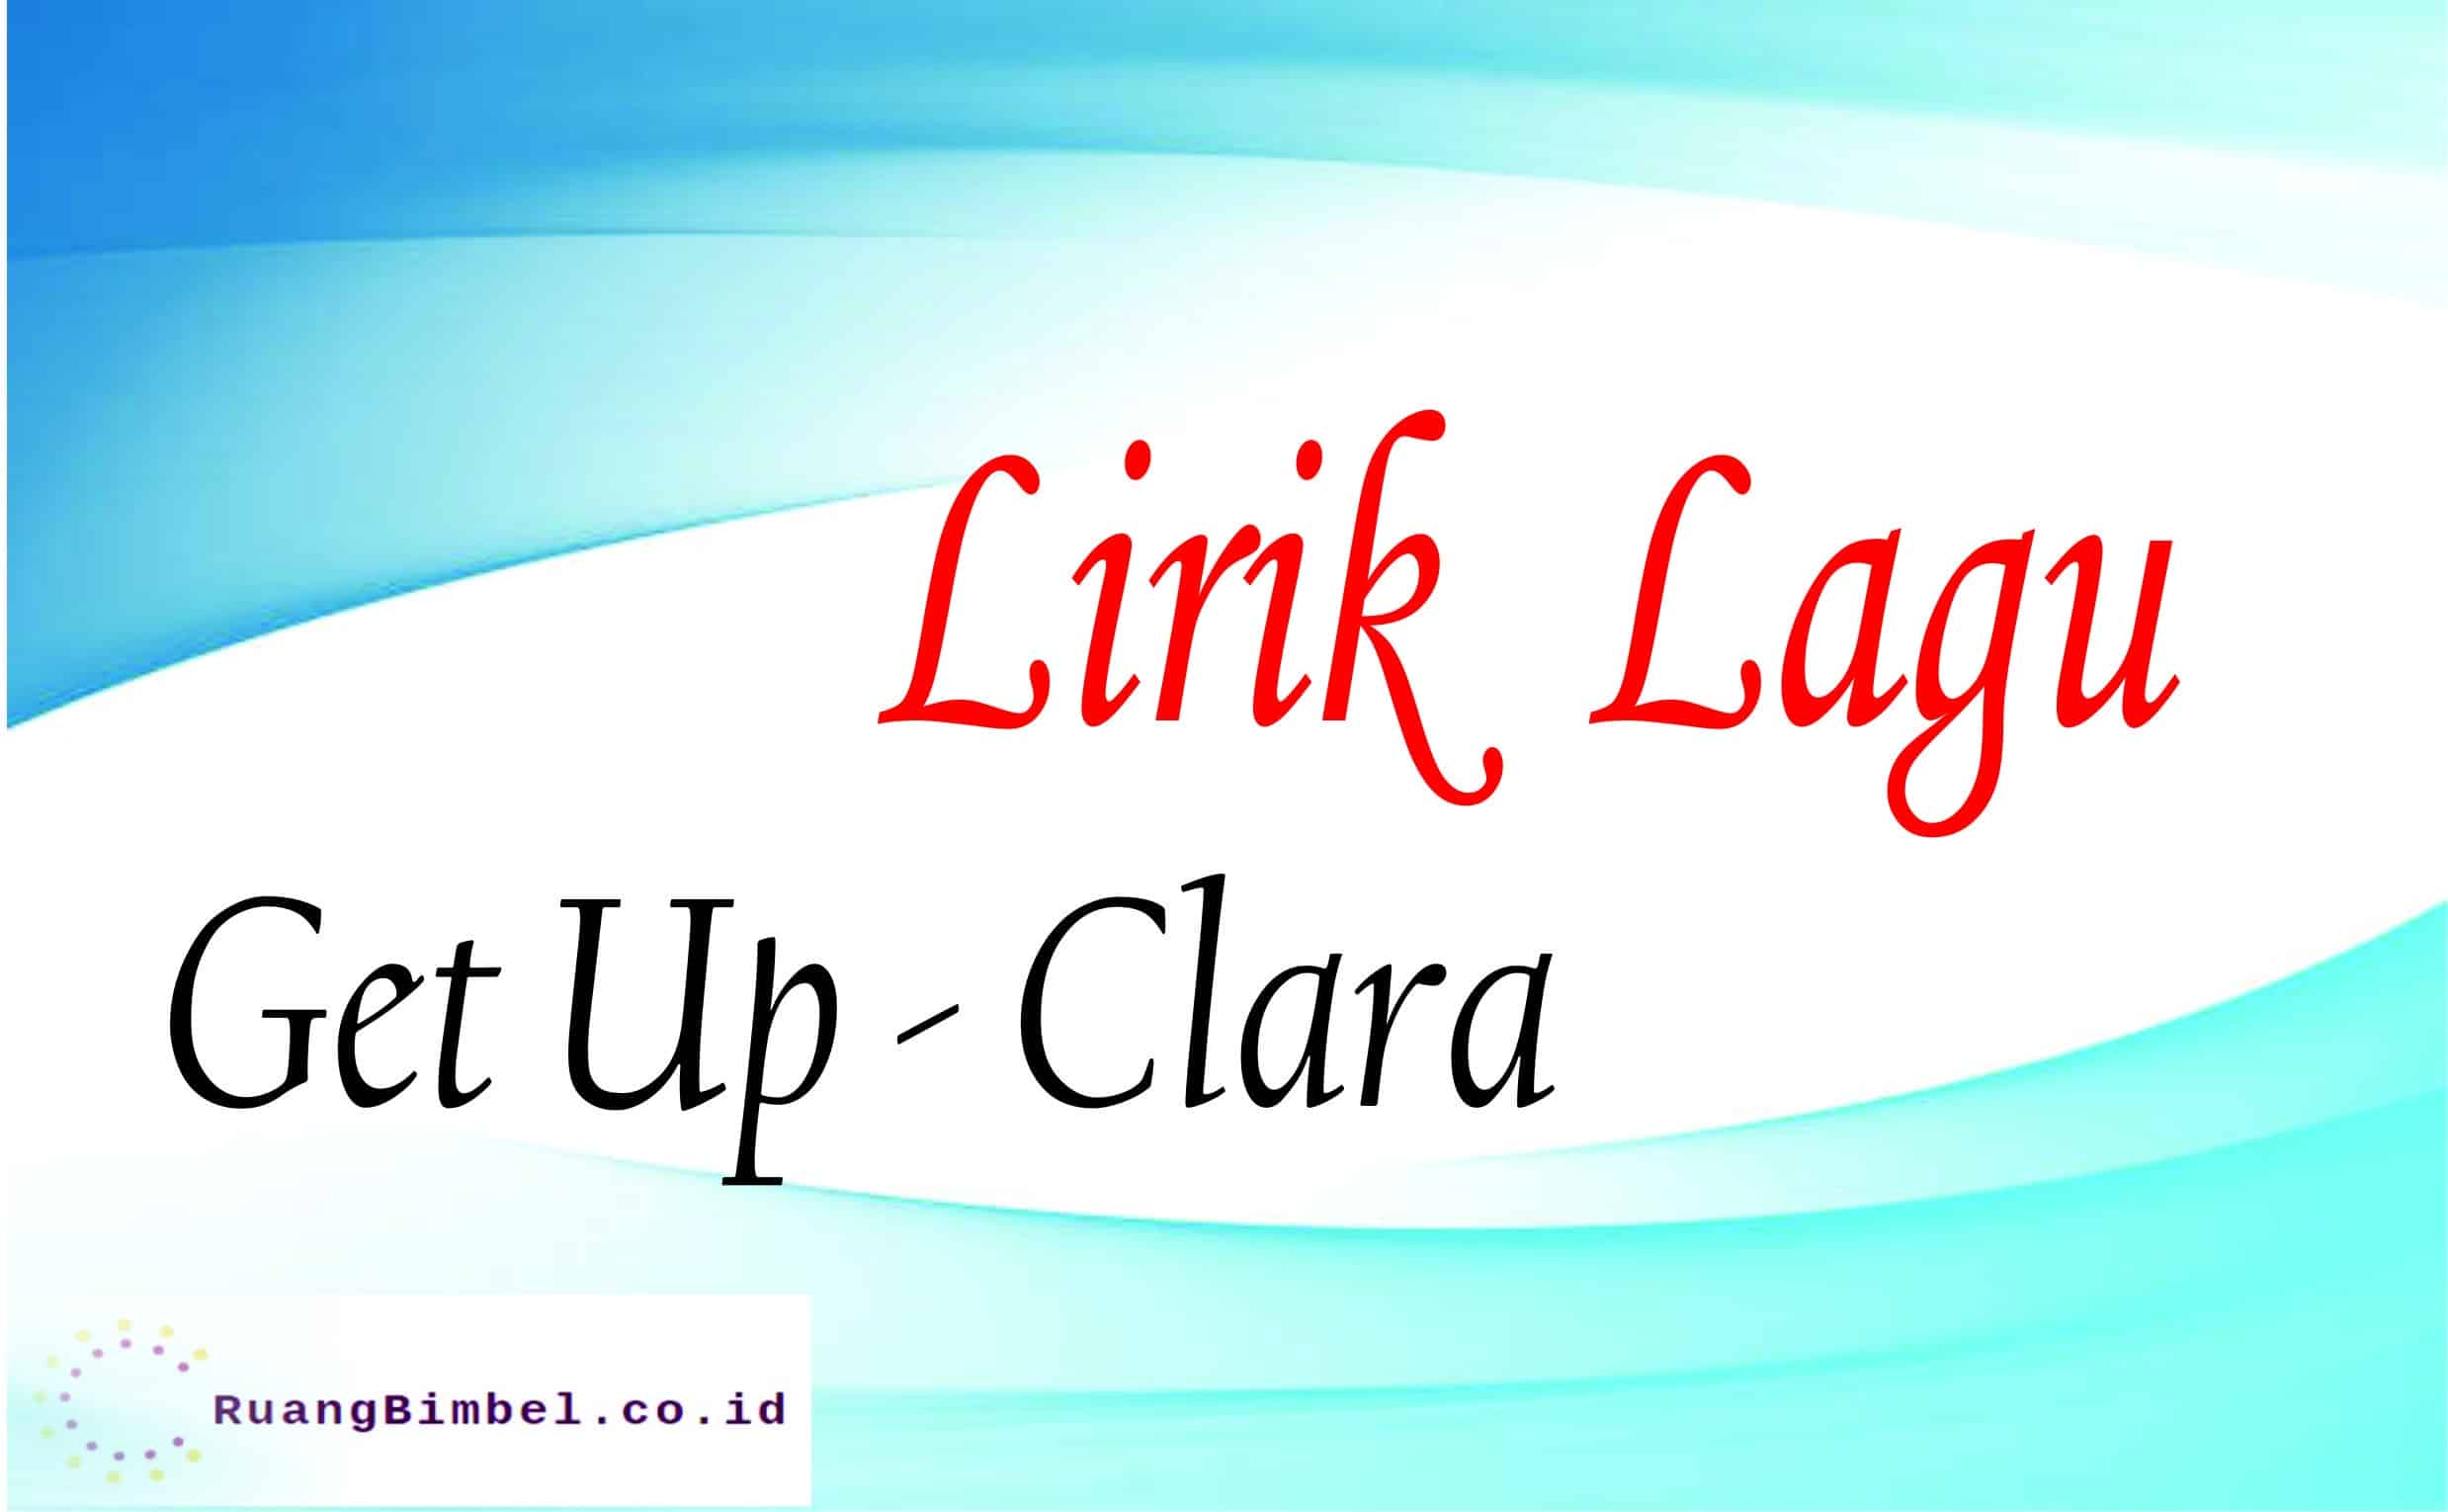 Lirik Lagu Get Up Clara dan Terjemahan RuangBimbel.co.id